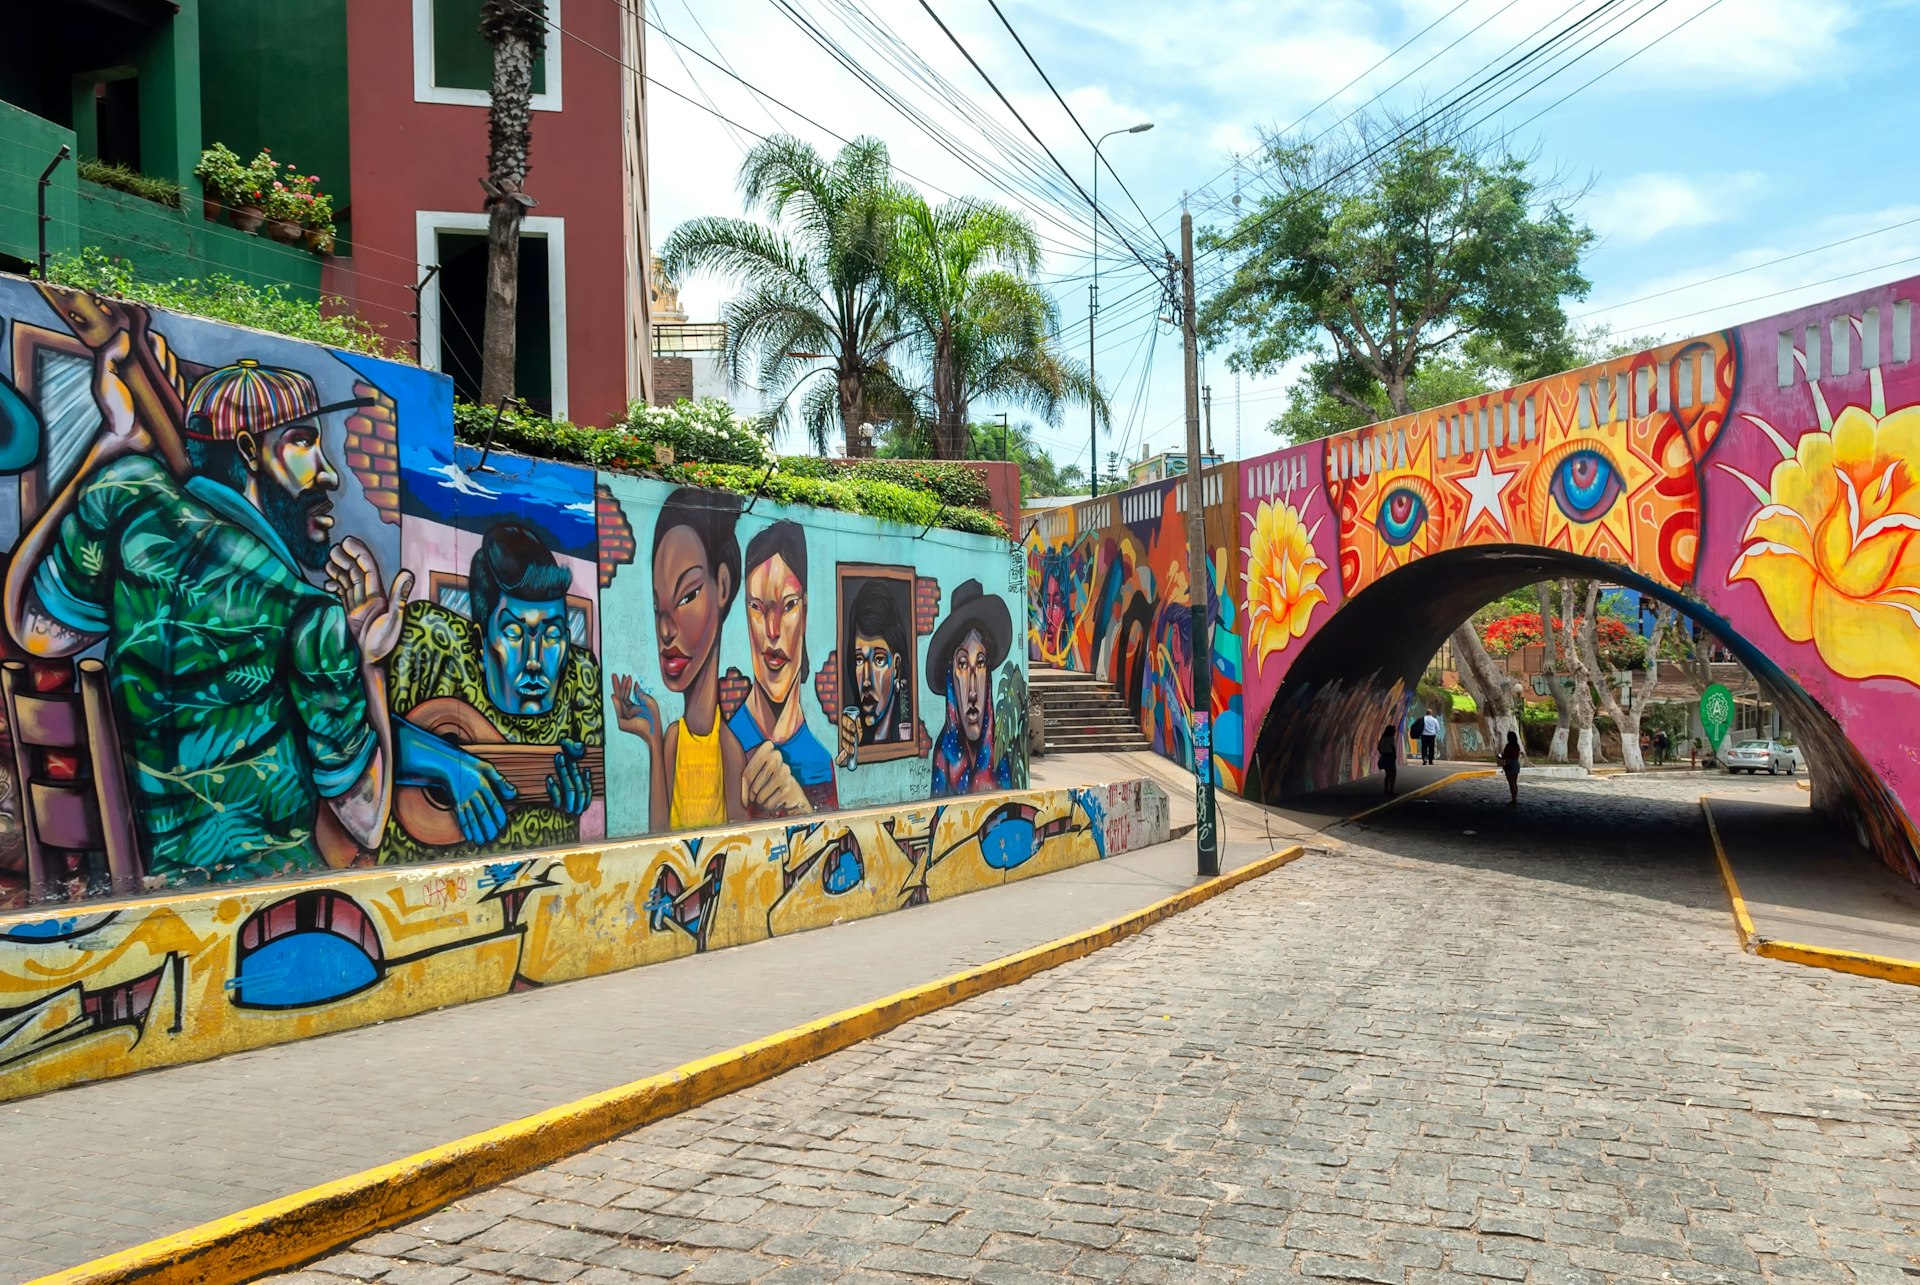 View of Barranco street murals in Lima, Peru